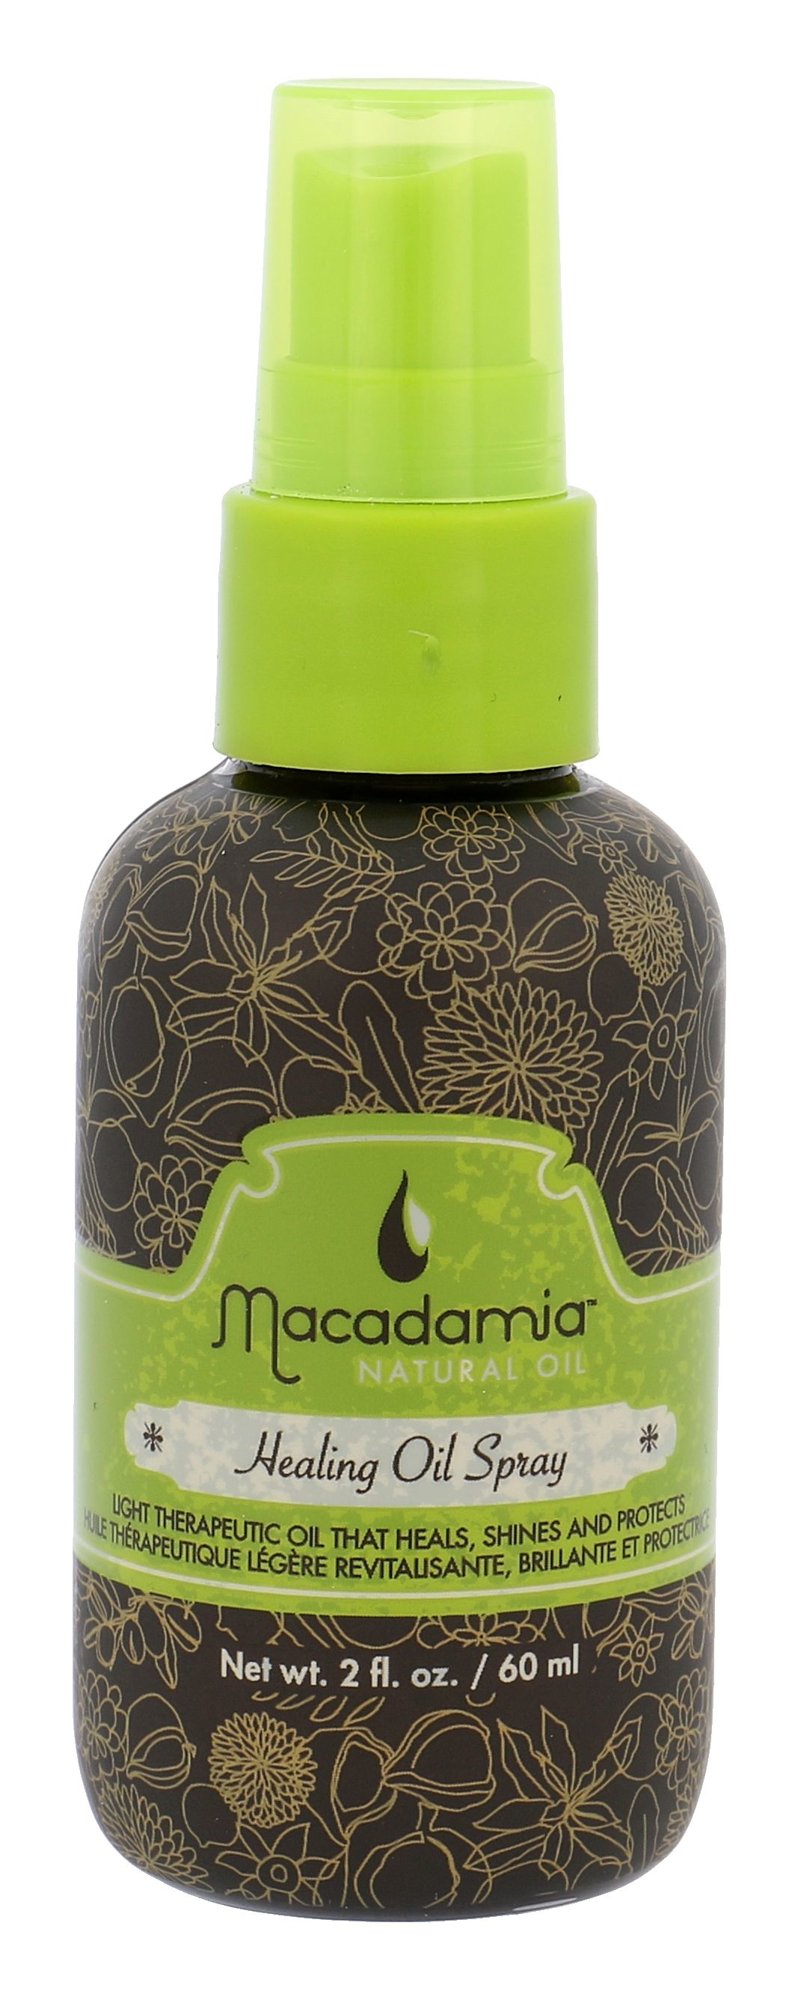 Macadamia Professional Natural Oil Healing Oil Spray plaukų aliejus